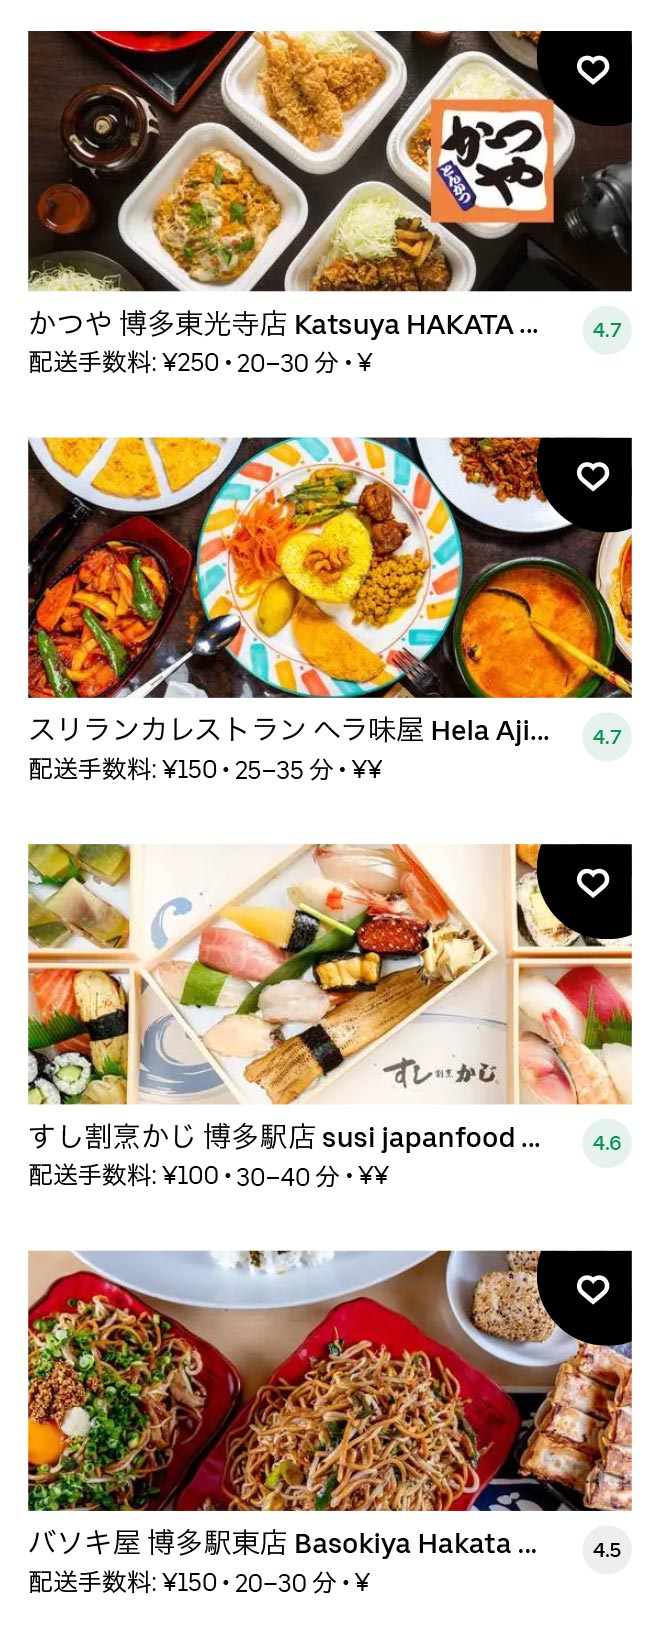 Higashi hie menu 2101 08